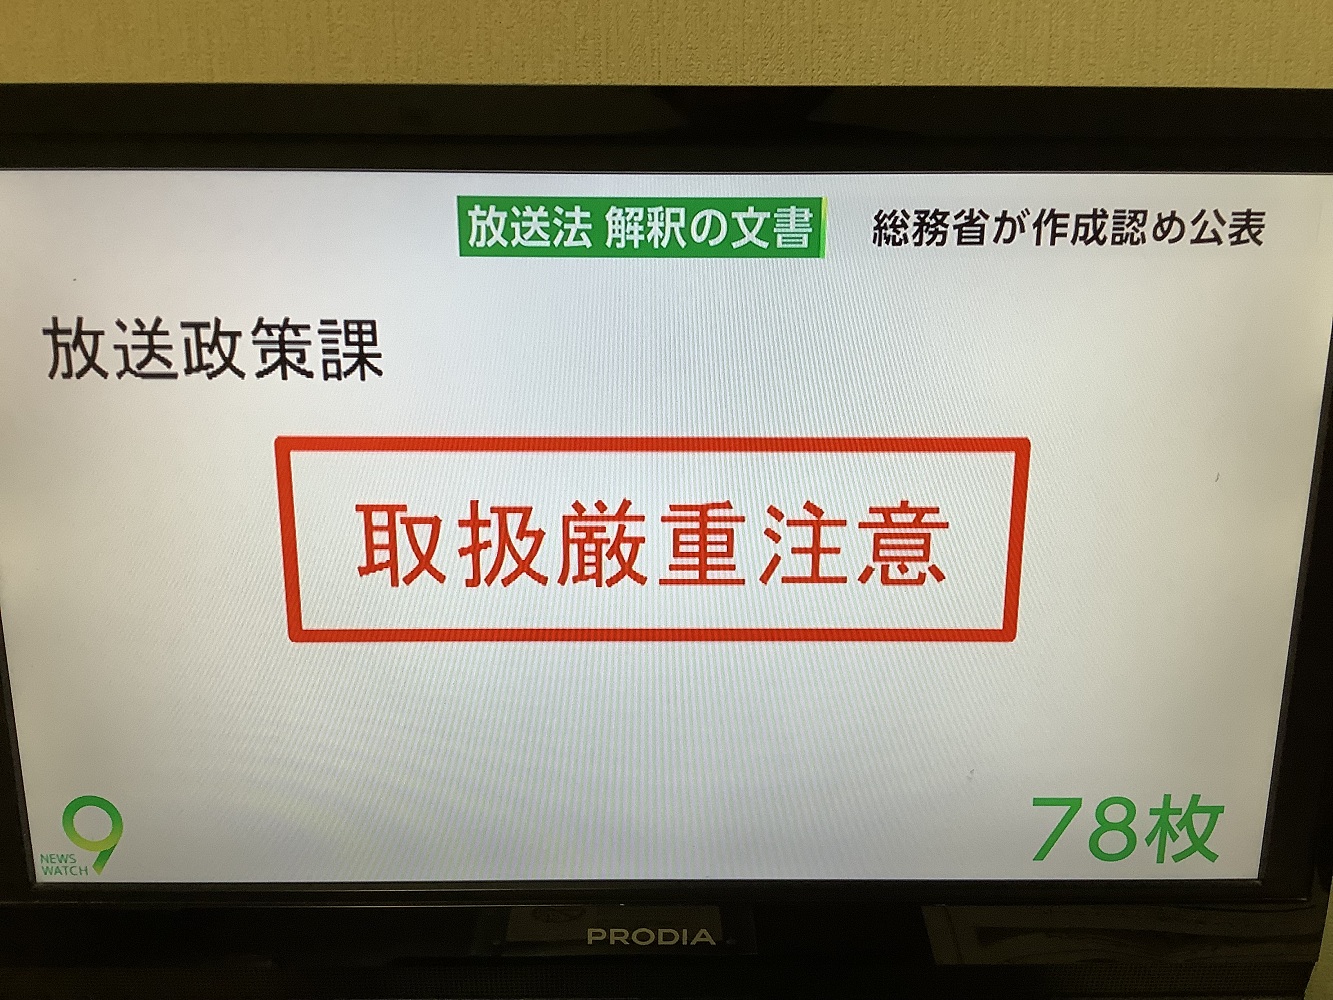 這份必須嚴重注意的總務省內部機密文件，顯示安倍官邸如何施壓來變成能干預敵視自己的電視台節目。 圖：攝自NHK 7日新聞